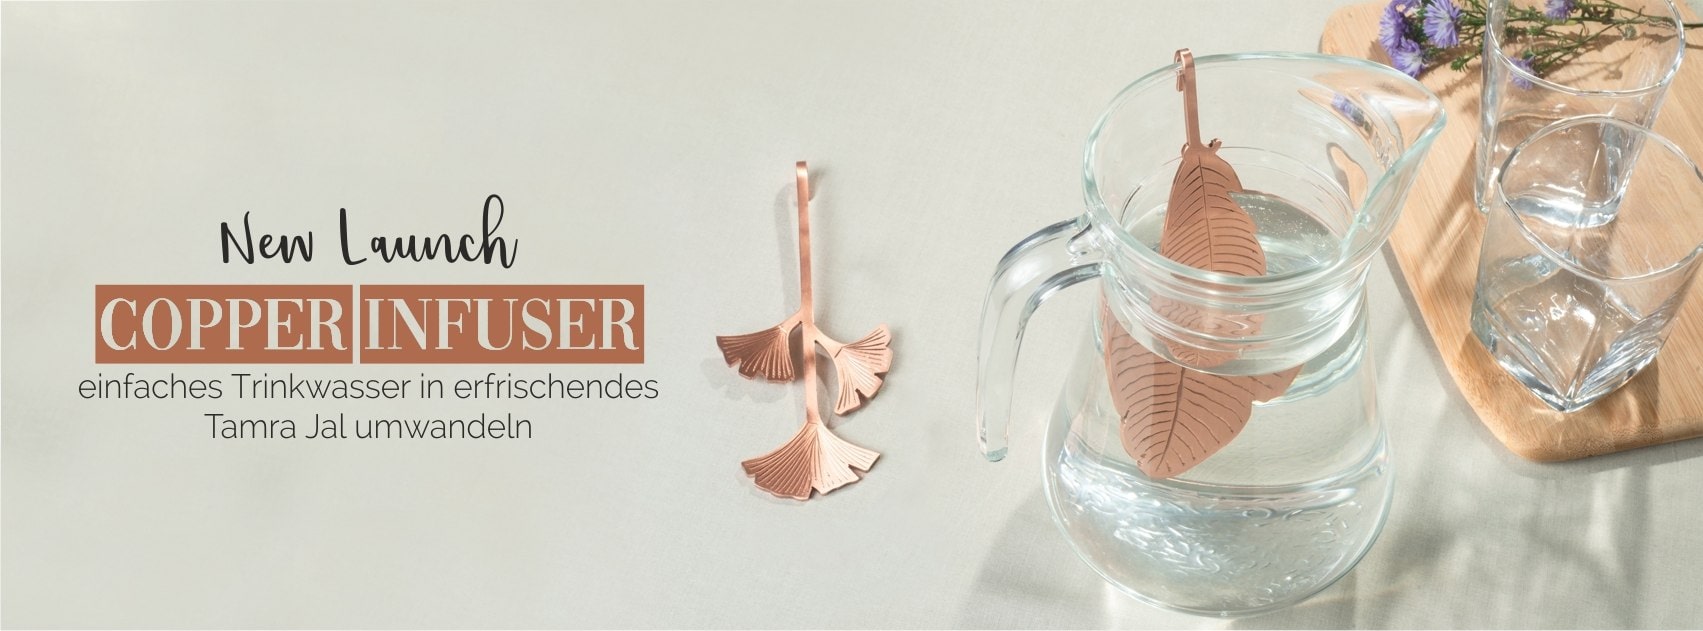 Copper Infuser web banner_G